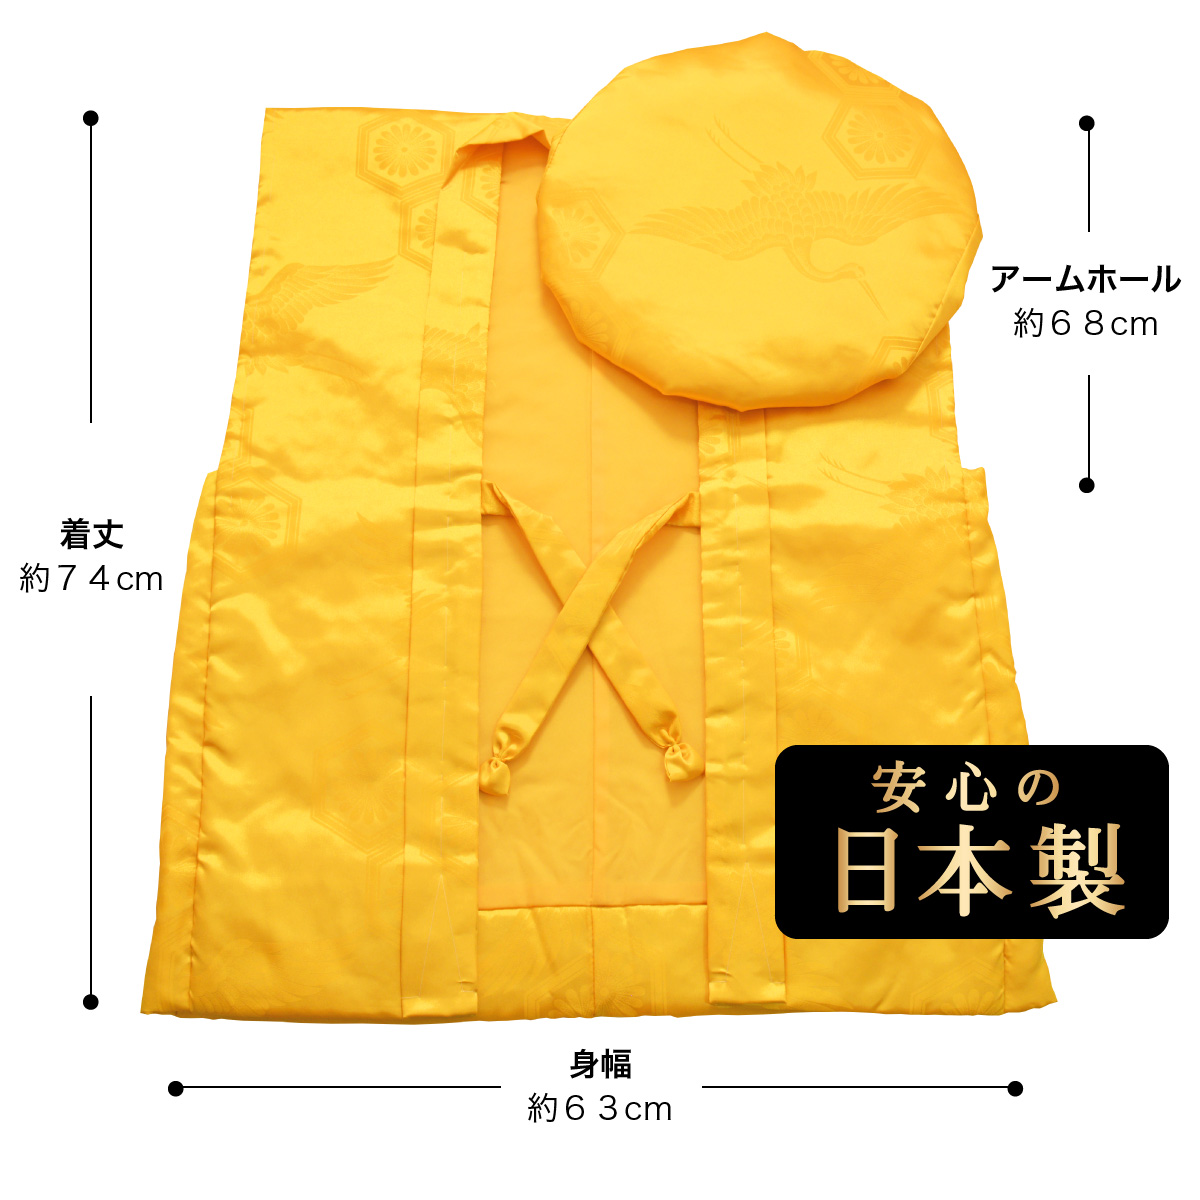 傘寿 米寿 プレゼント 黄色のちゃんちゃんこ サイズ